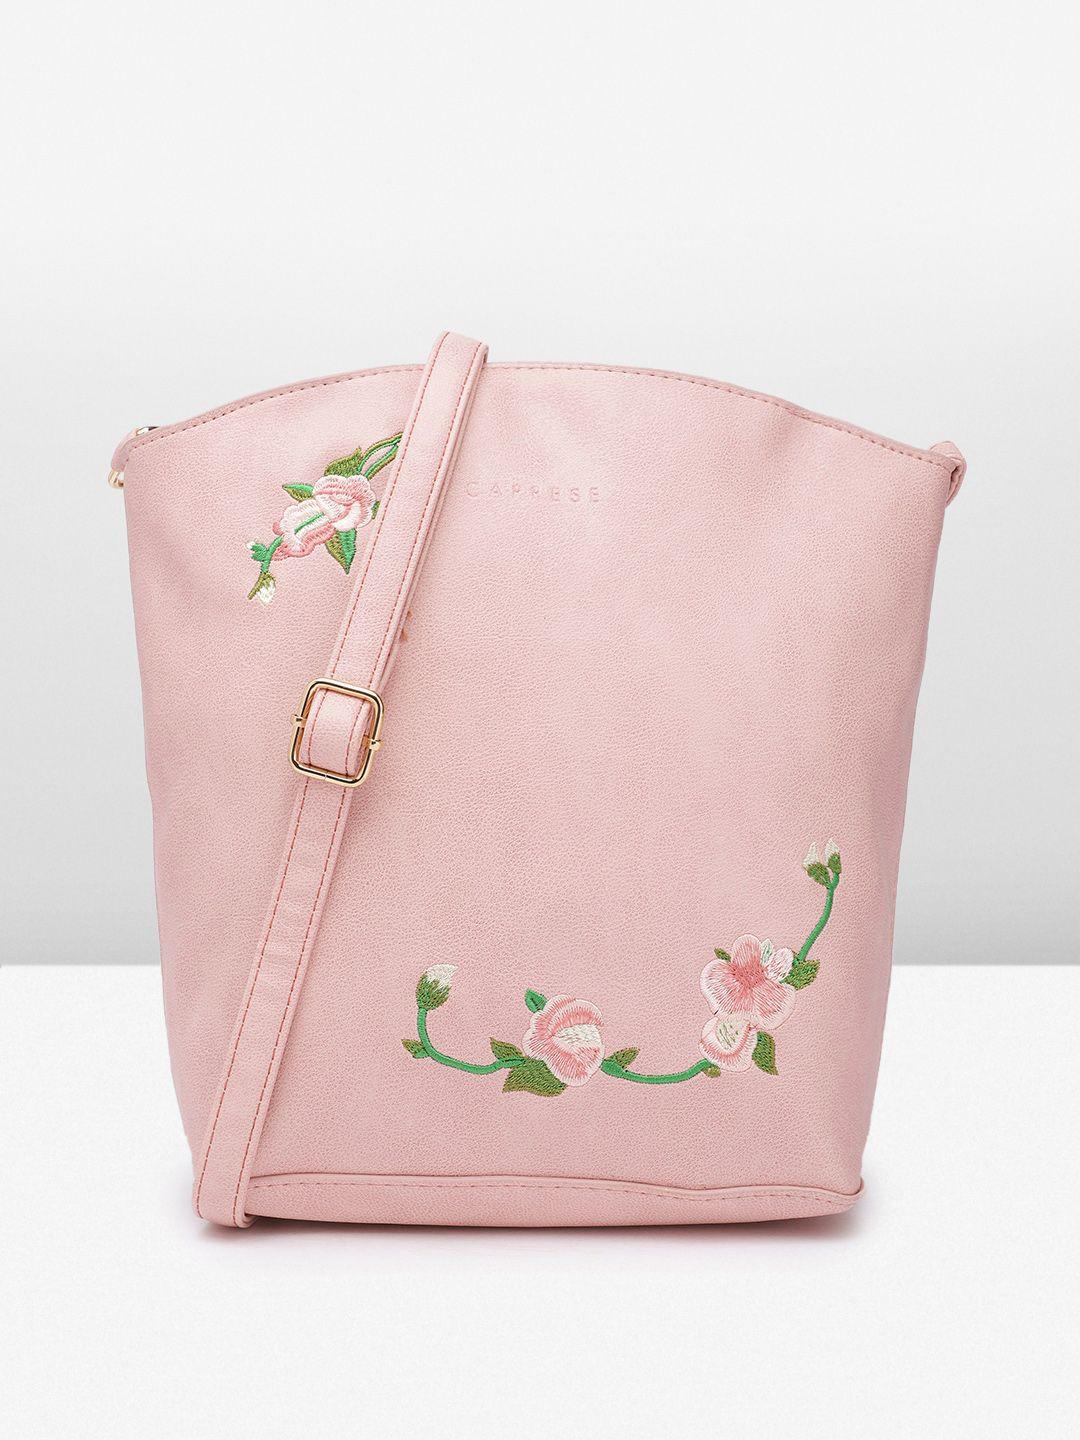 caprese floral embroidered sling bag